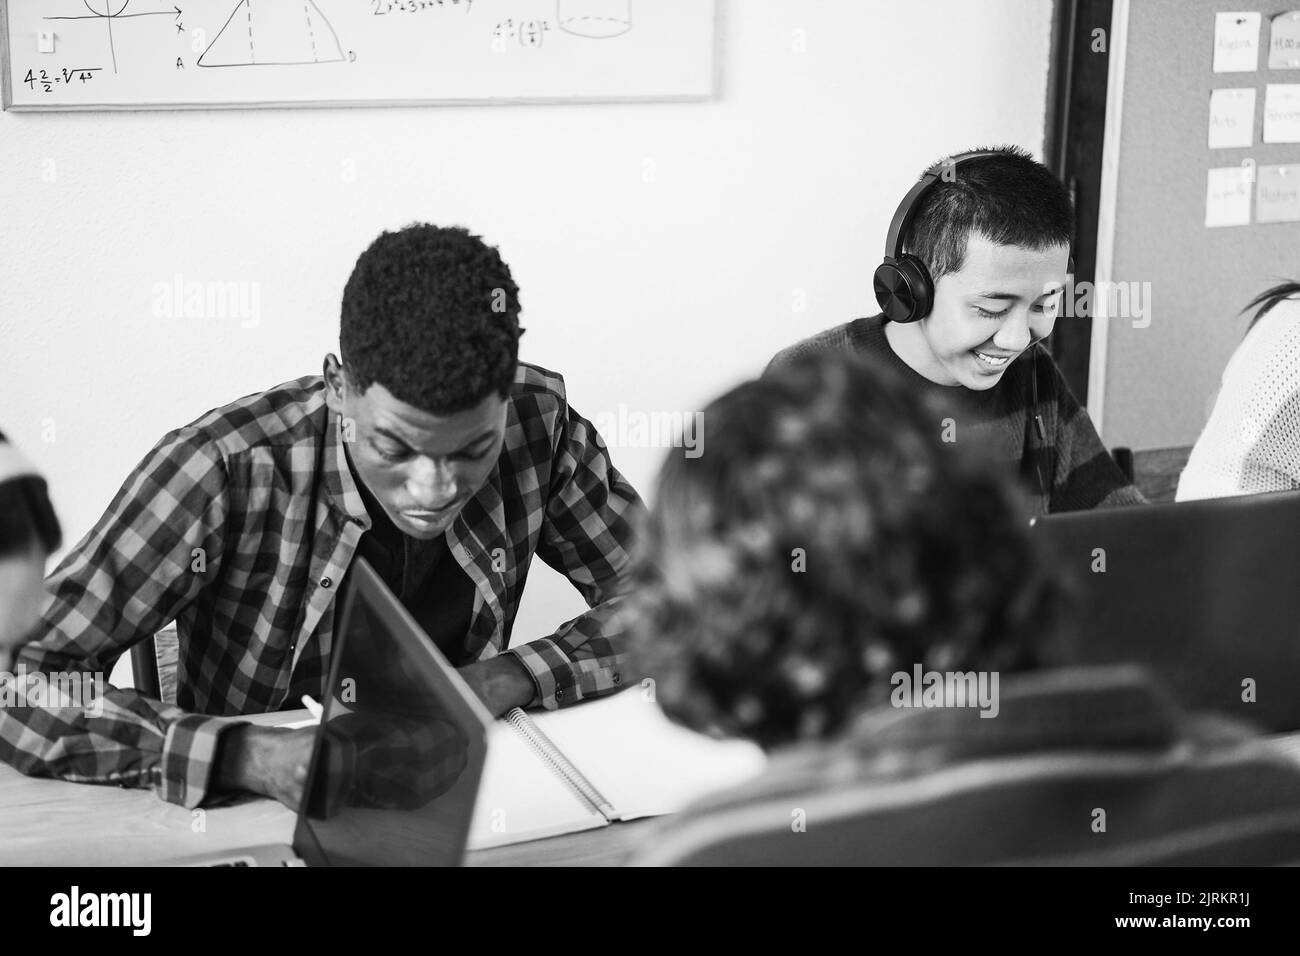 Multirassische Schüler mit Laptop-Computern während des Studiums zusammen in der Schule - Fokus auf asiatische Kerl Gesicht - Schwarz-Weiß-Schnitt Stockfoto